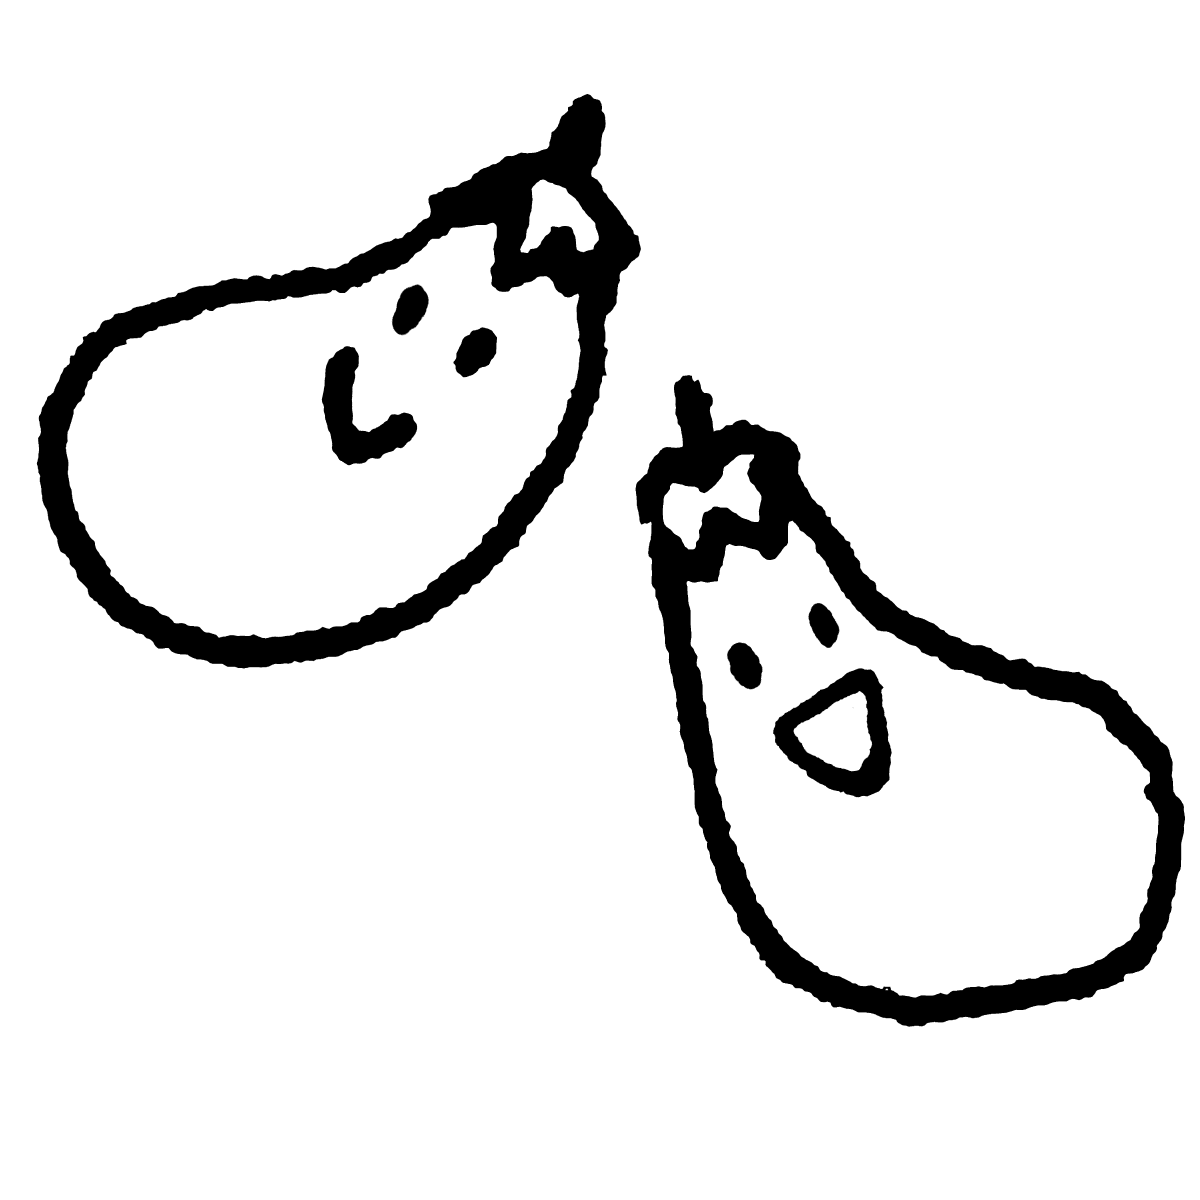 ナス（顔つき）のイラスト / Eggplant (countenance) Illustration